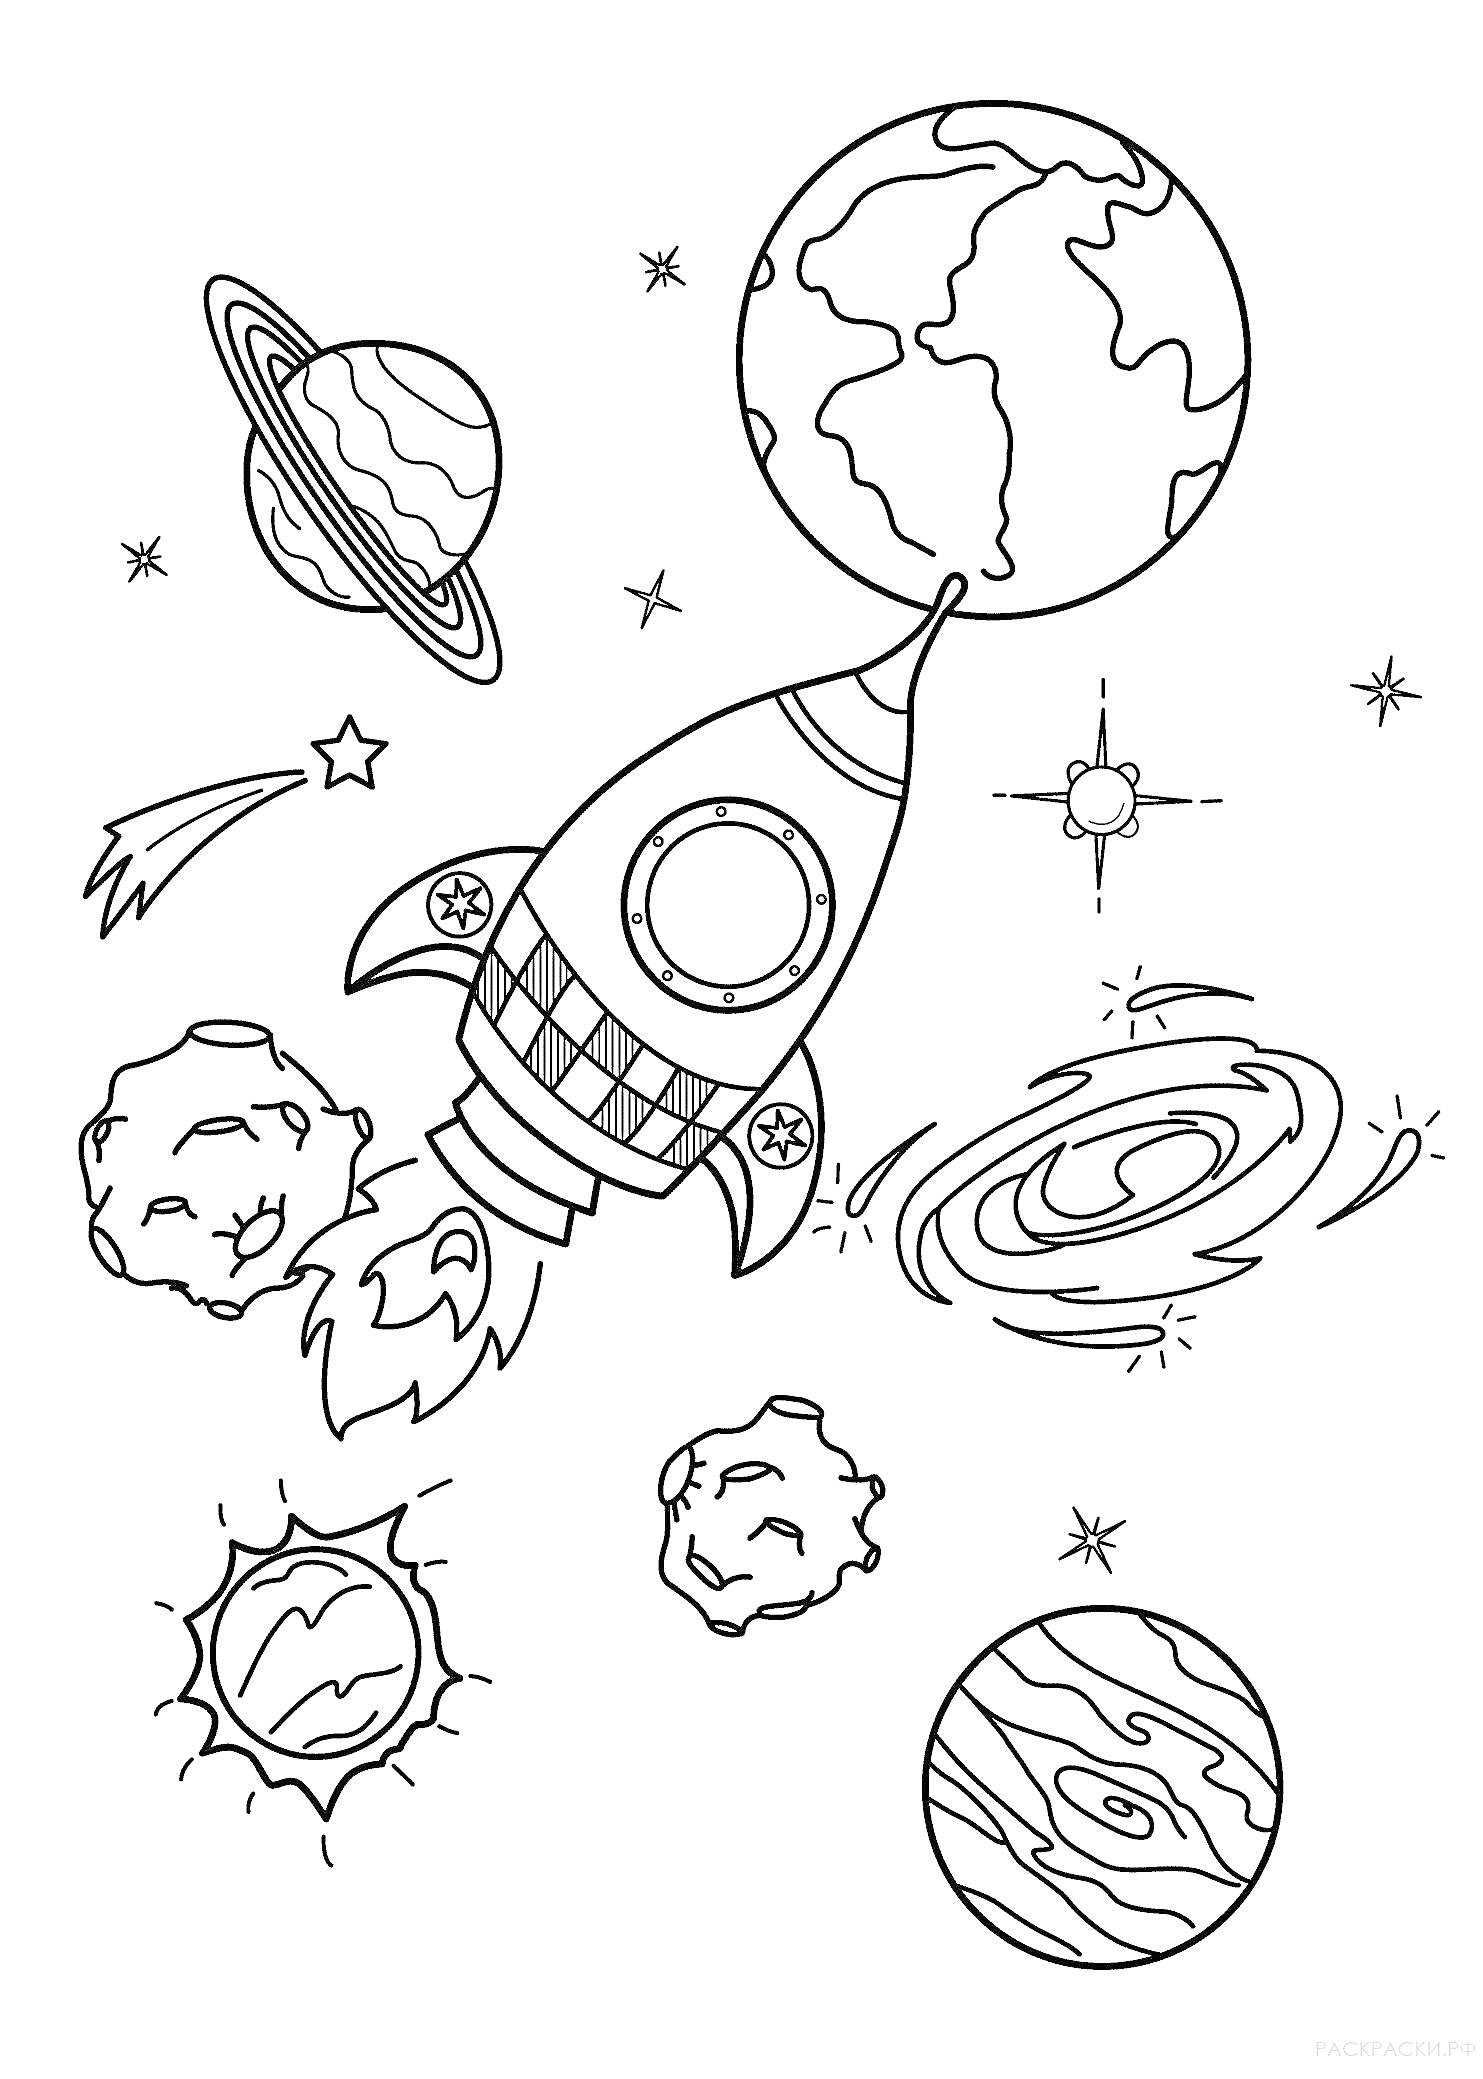 Раскраска Космический корабль с ракетой в космосе, вокруг которой планеты, звёзды, комета, астероиды и галактики